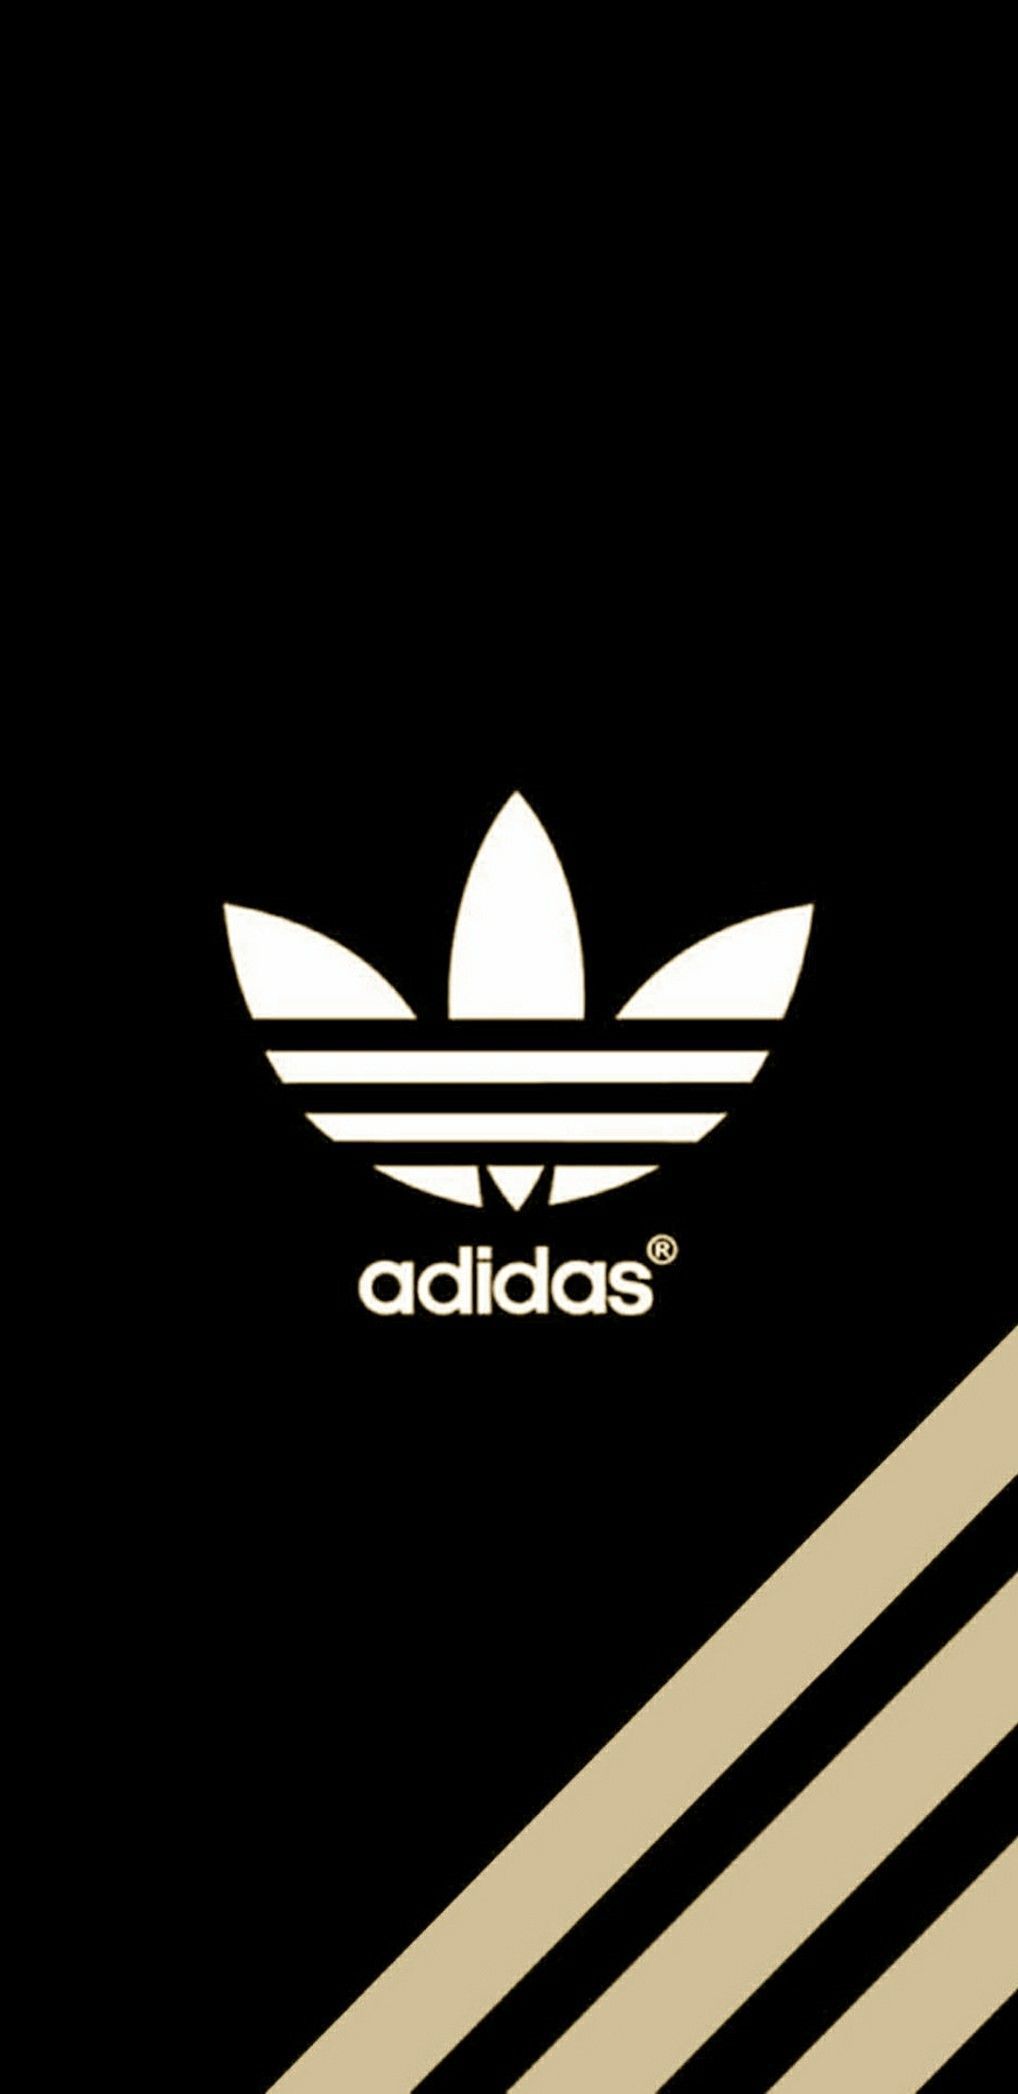 Adidas 3 Stripe Logo Wallpapers On Wallpaperdog